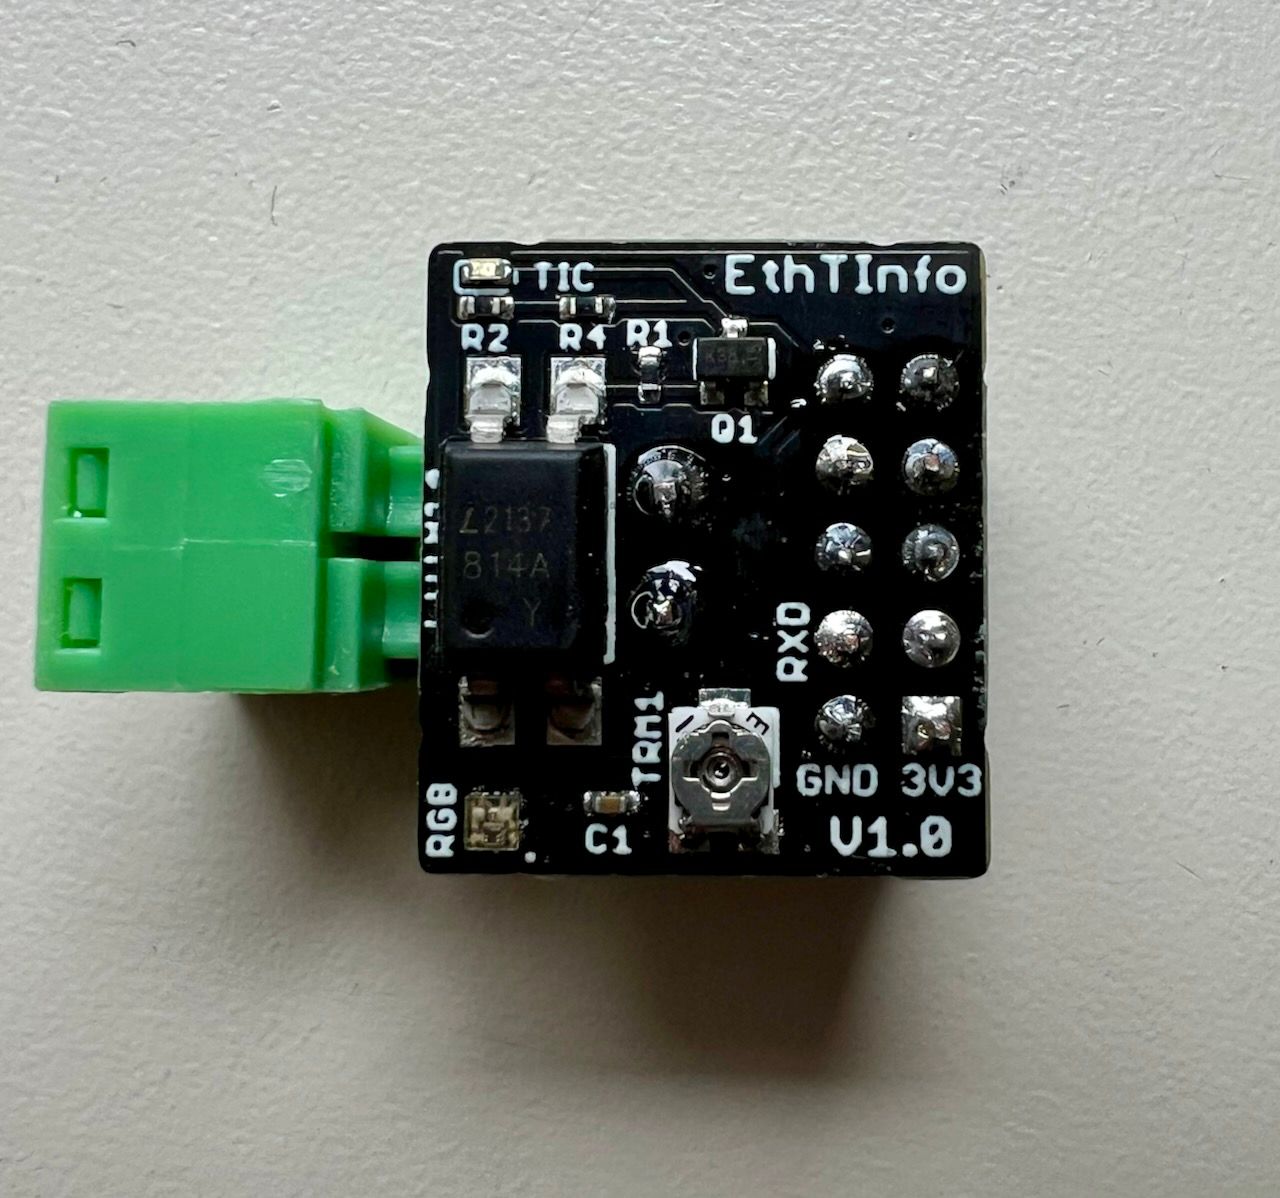 EthTinfo-soldered.jpg